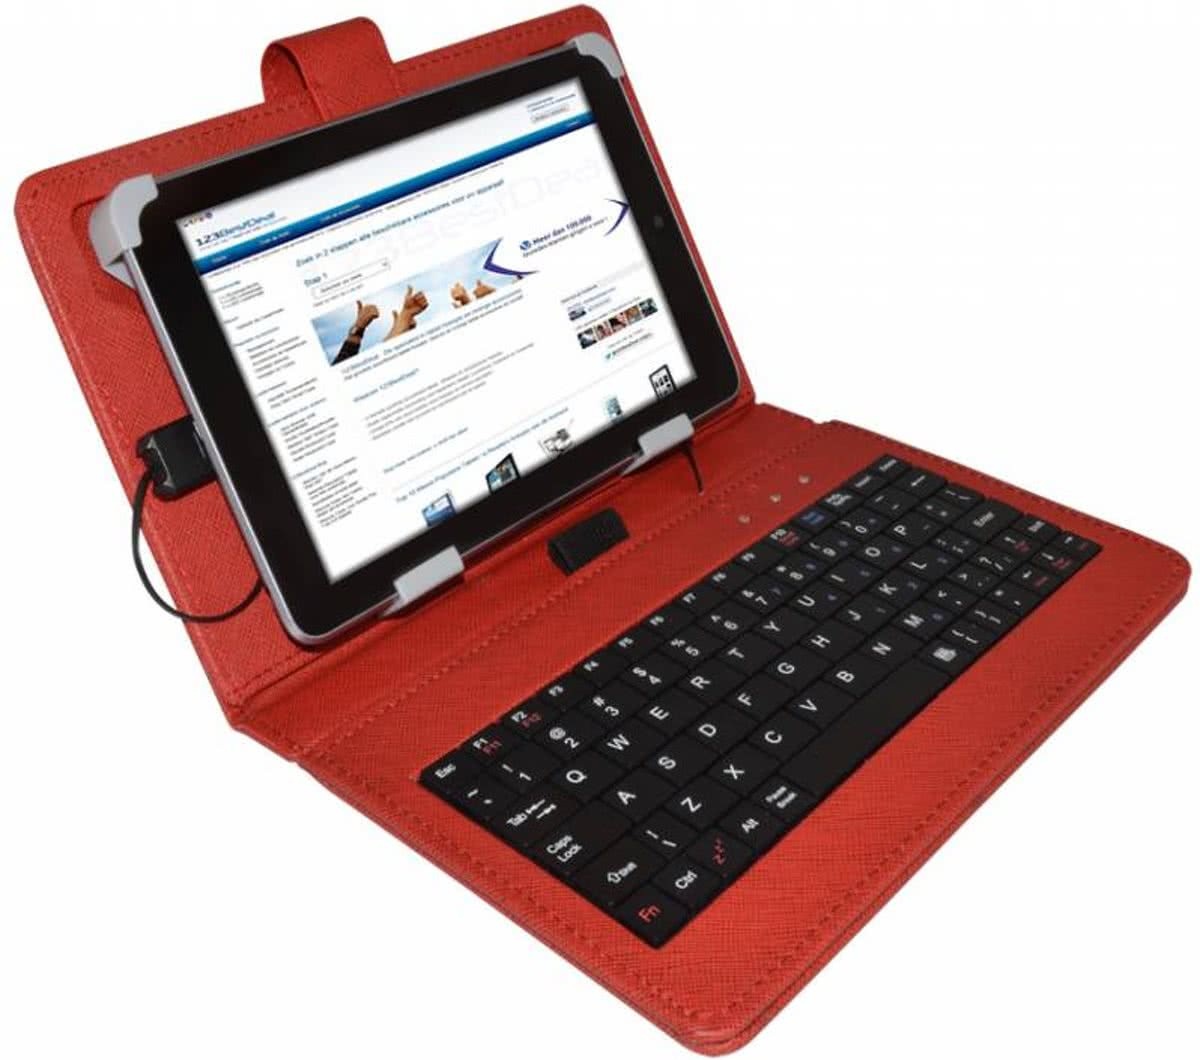 i12Cover Universele smalle 7 inch Keyboard Case, rood , merk Betaalbare universele keyboard case voor een smalle 7 inch tablet. De cover is gemaakt van rood PU leer met ingebouwd toetsenbord